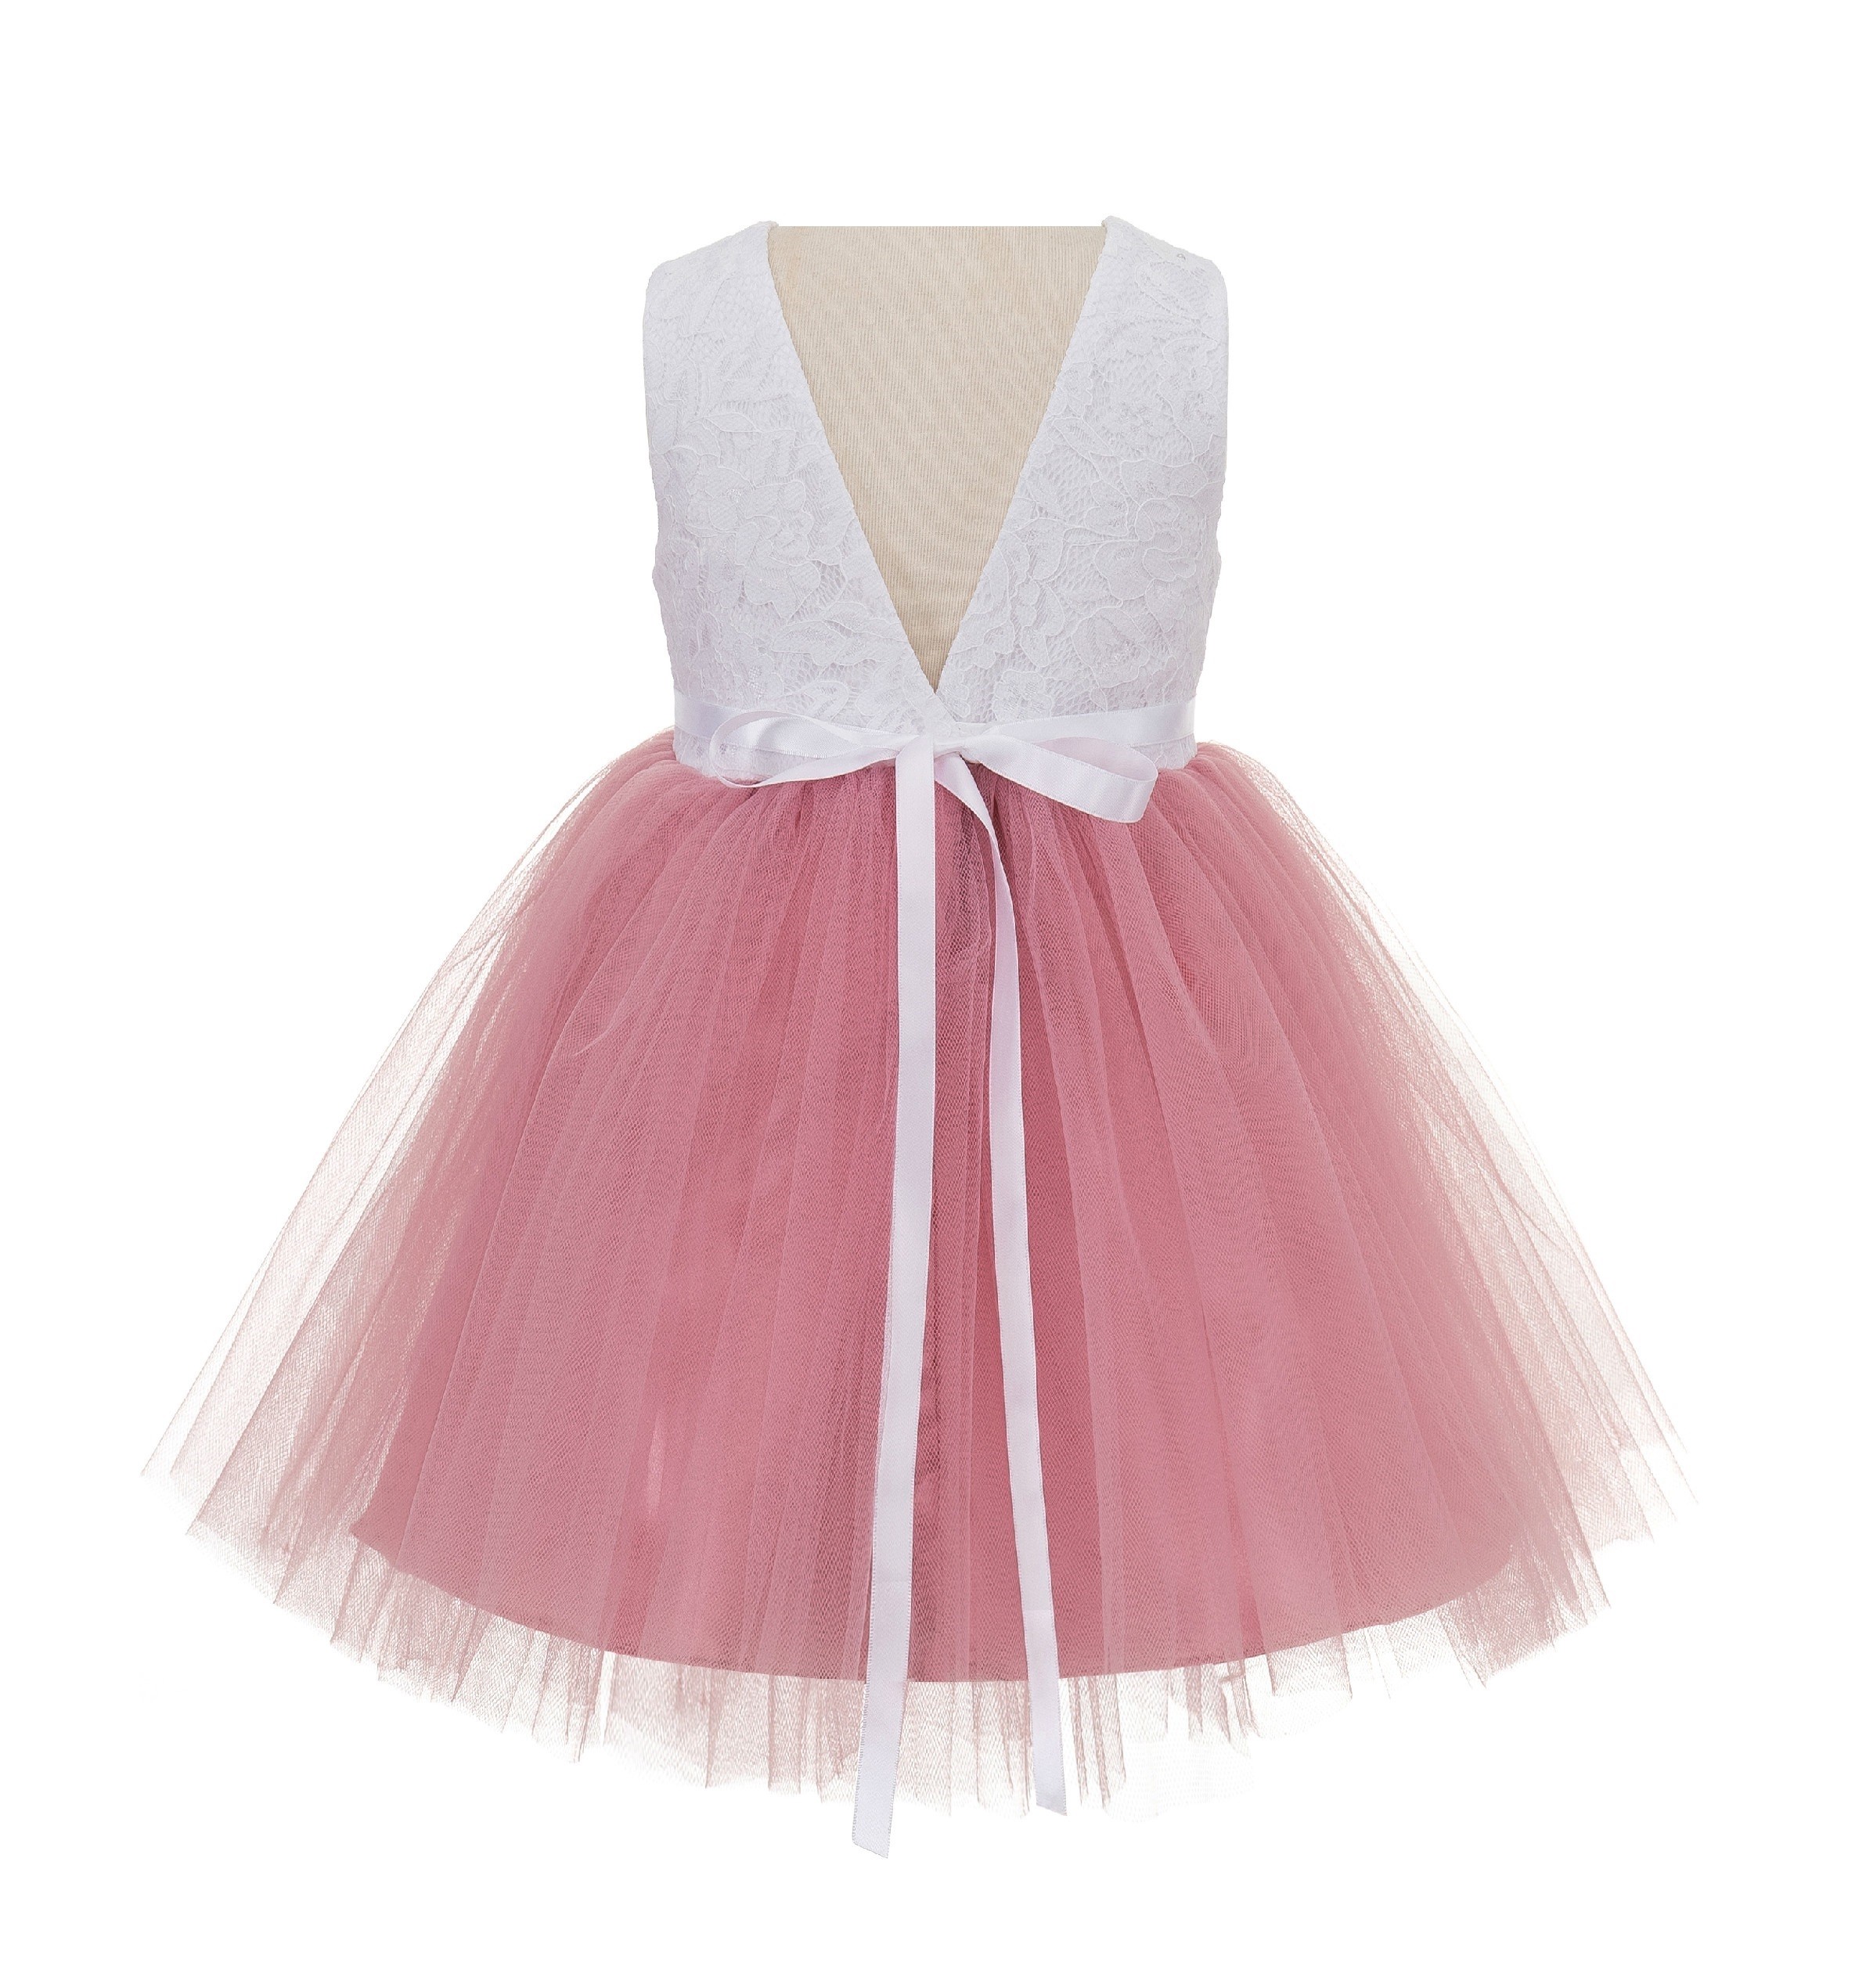 Dusty Rose / White Backless Lace Flower Girl Dress V-Back 206R2